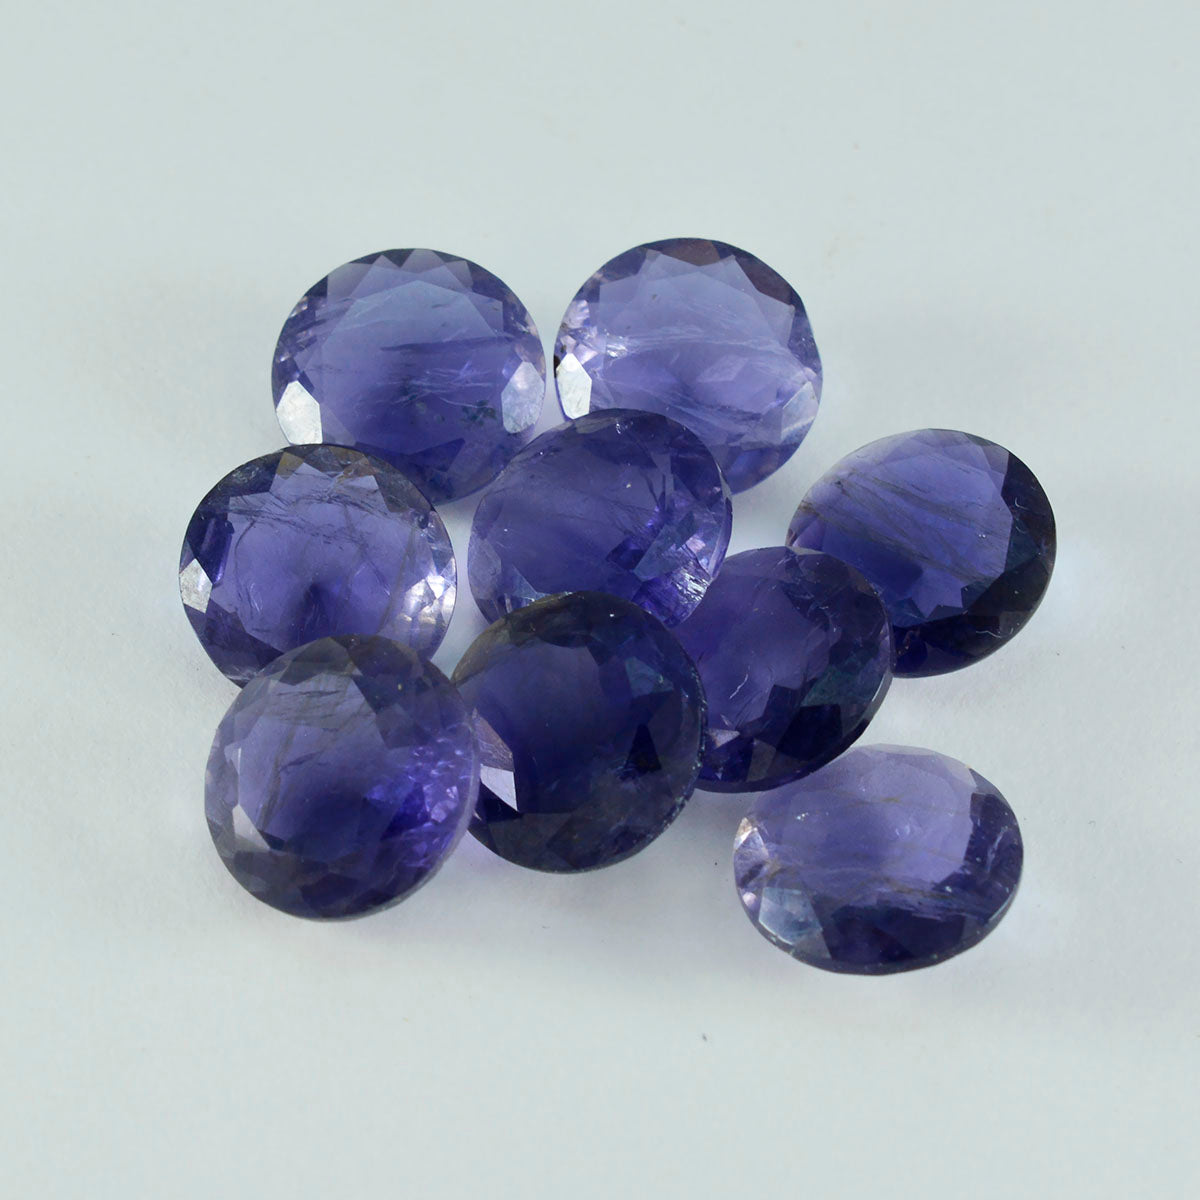 Riyogems 1pc iolite bleue à facettes 15x15mm forme ronde qualité incroyable pierre en vrac